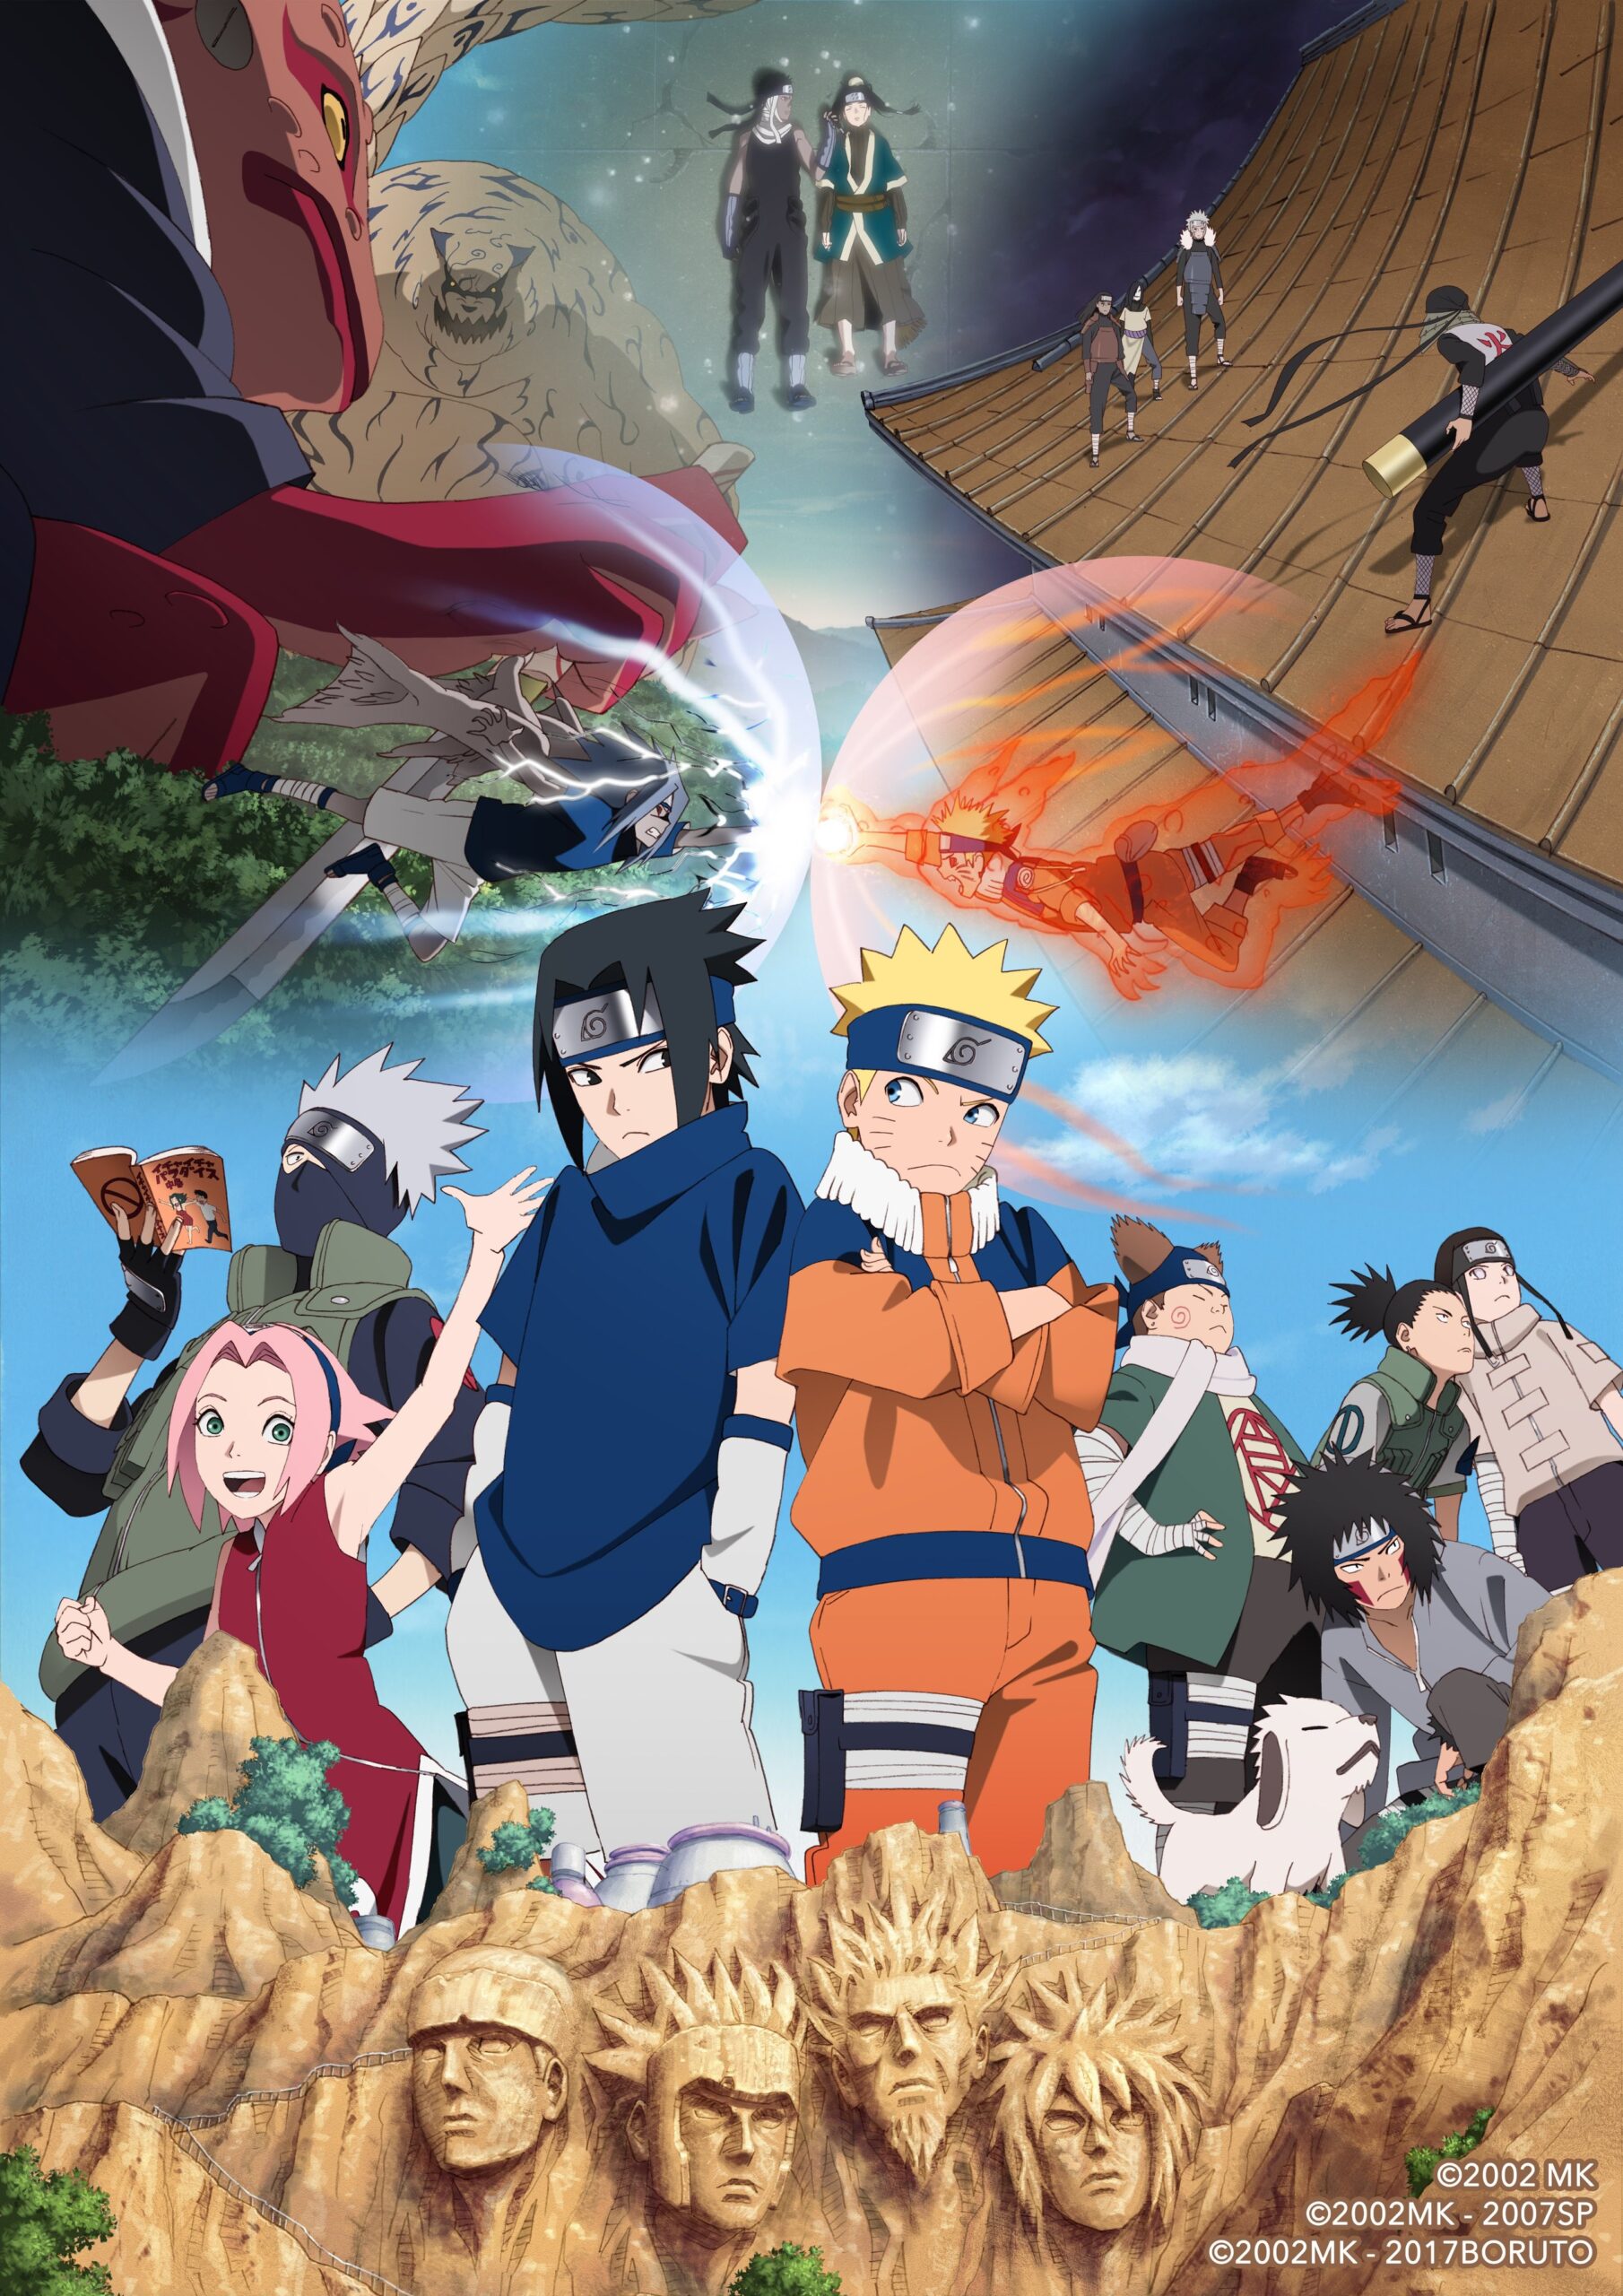 Naruto celebra su 20 aniversario con precioso arte del anime